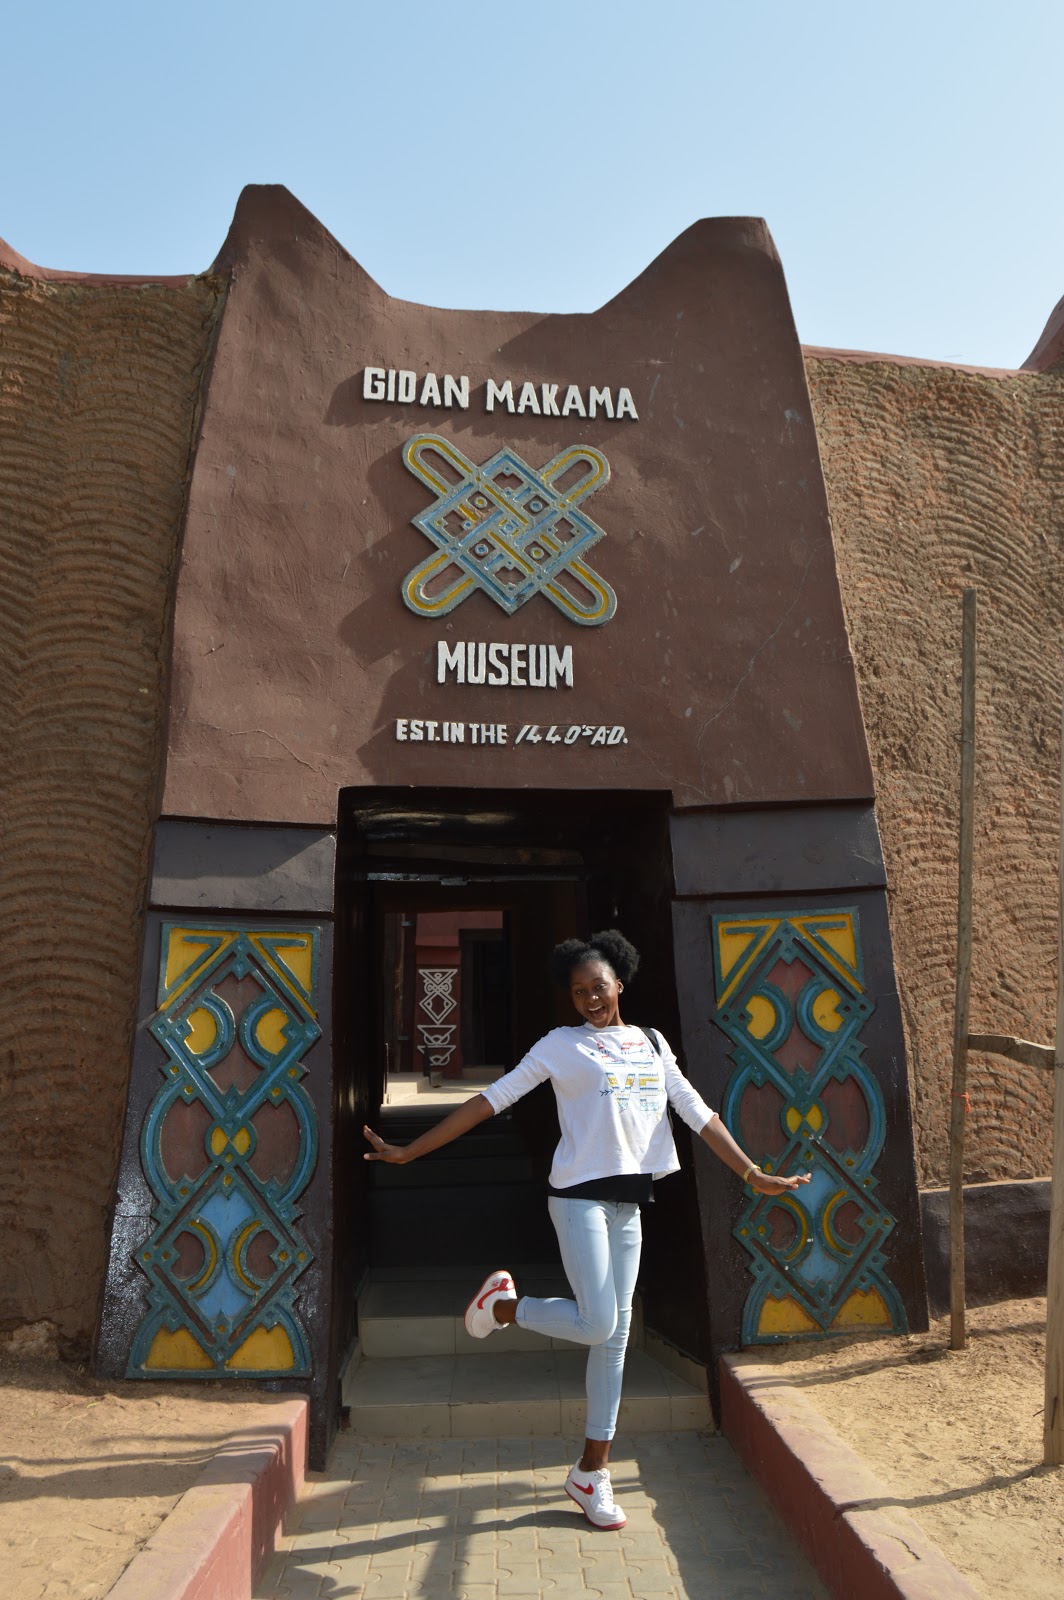 Visit to Gidan Makama Museum Kano state, Nigeria